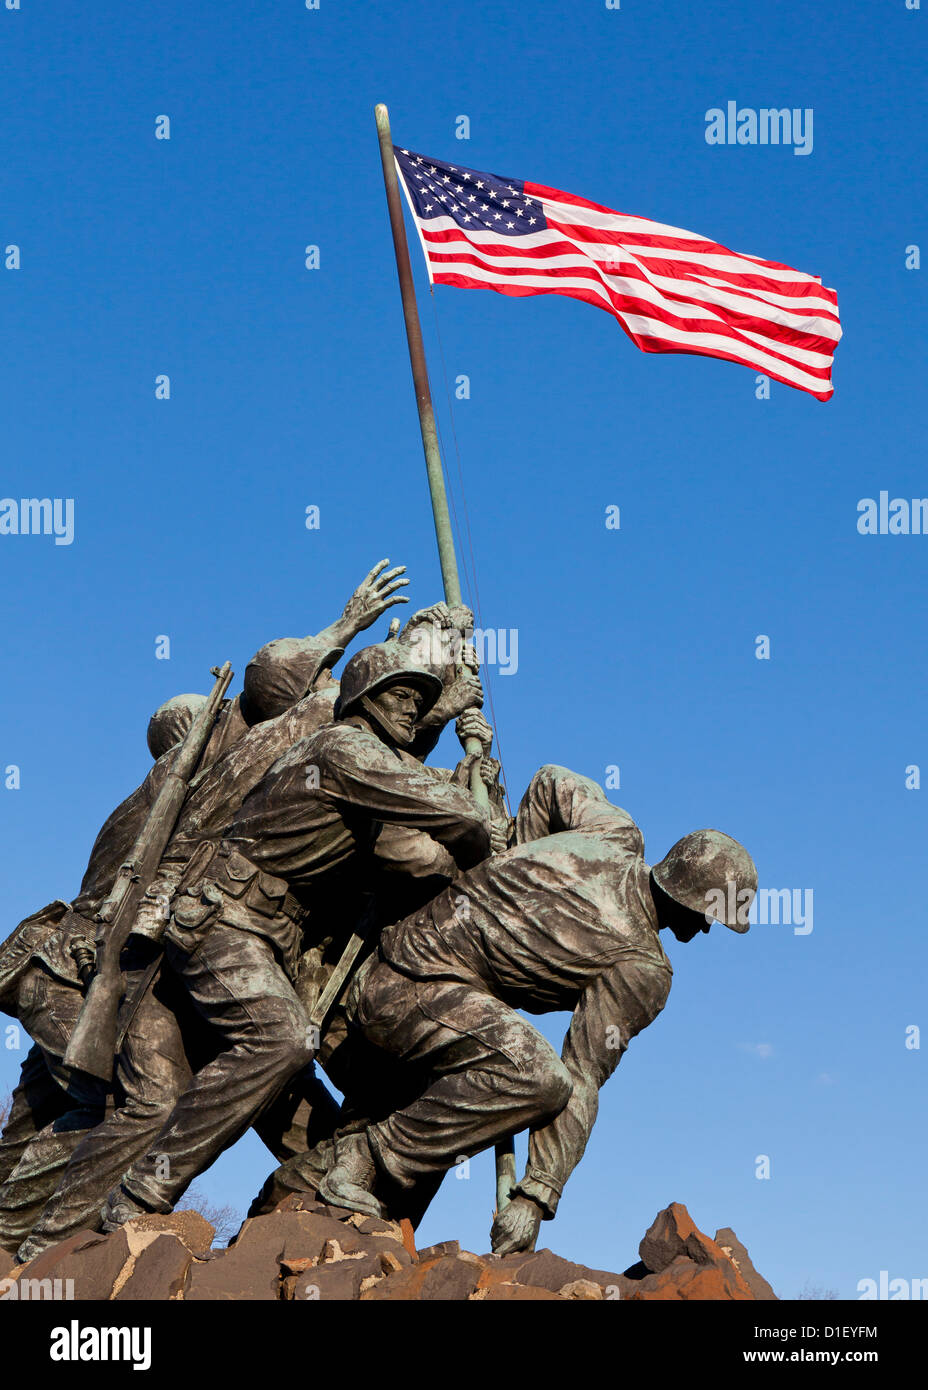 Mémorial du Corps des Marines des États-Unis - Washington, DC USA Banque D'Images